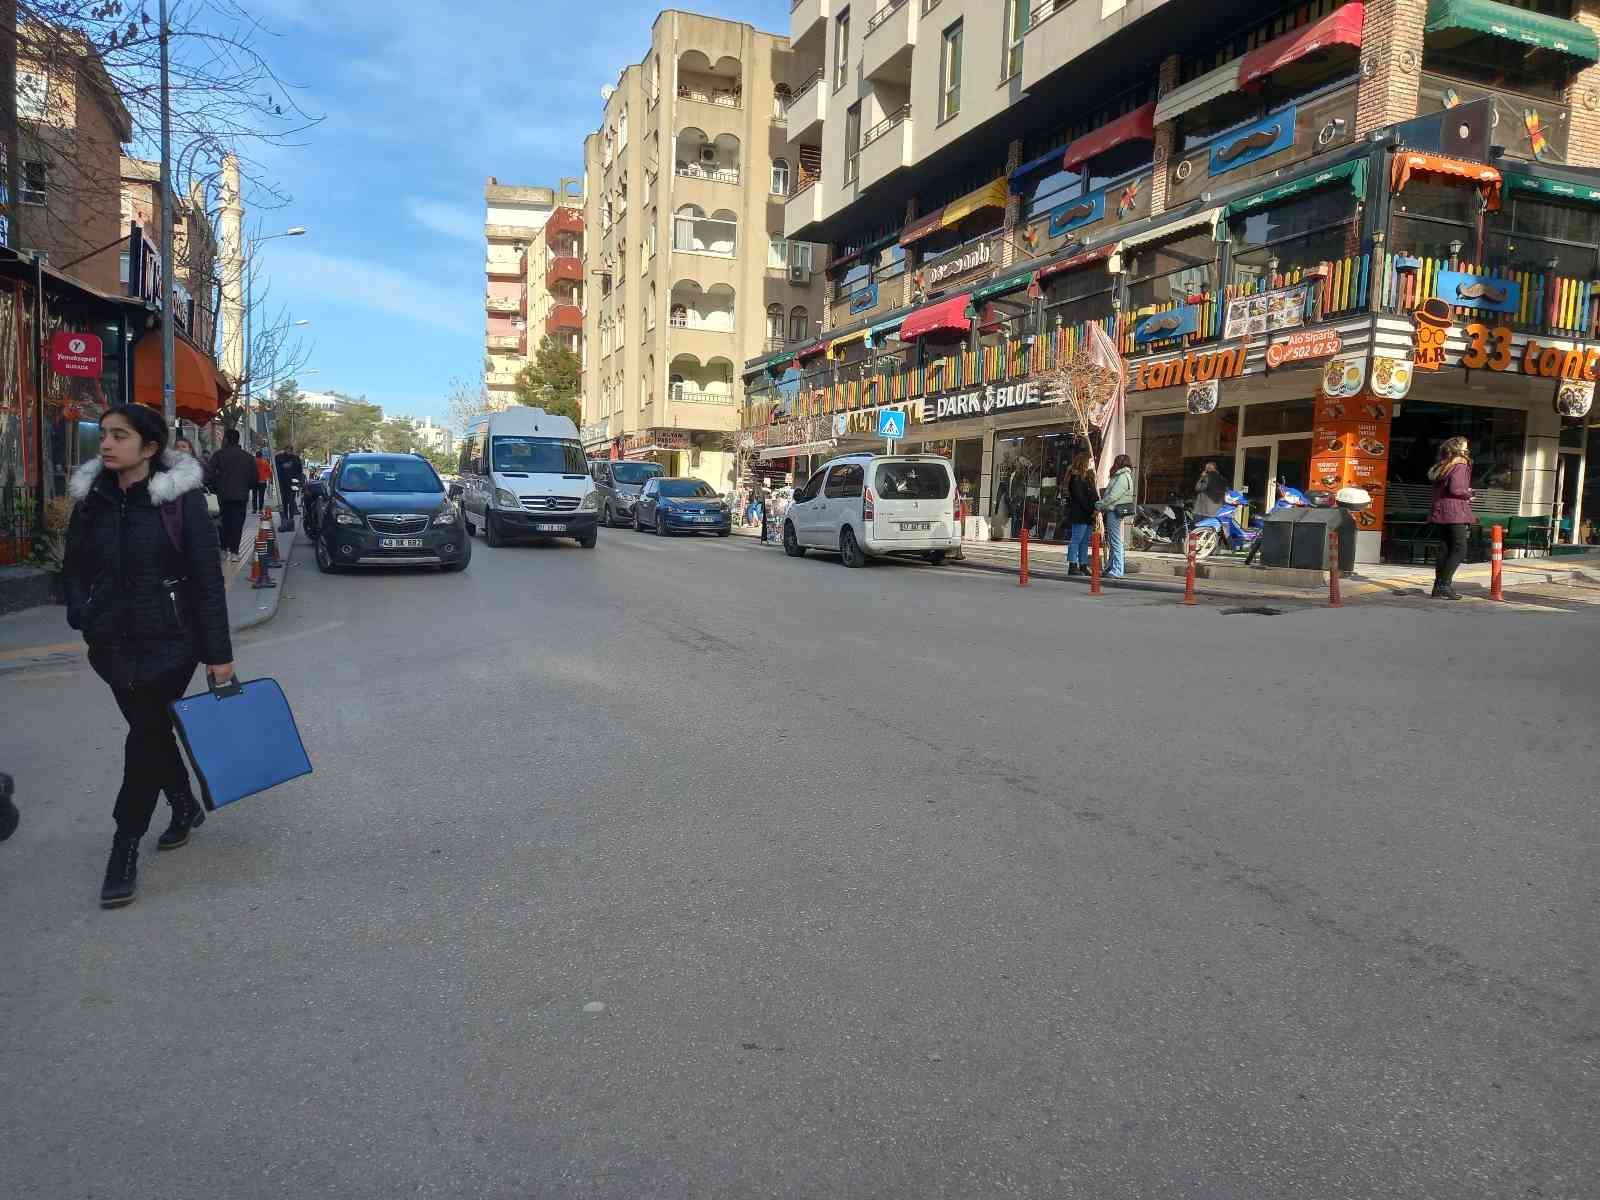 Vatandaşlar, kazaların yaşandığı caddeye kasis istiyor #mardin